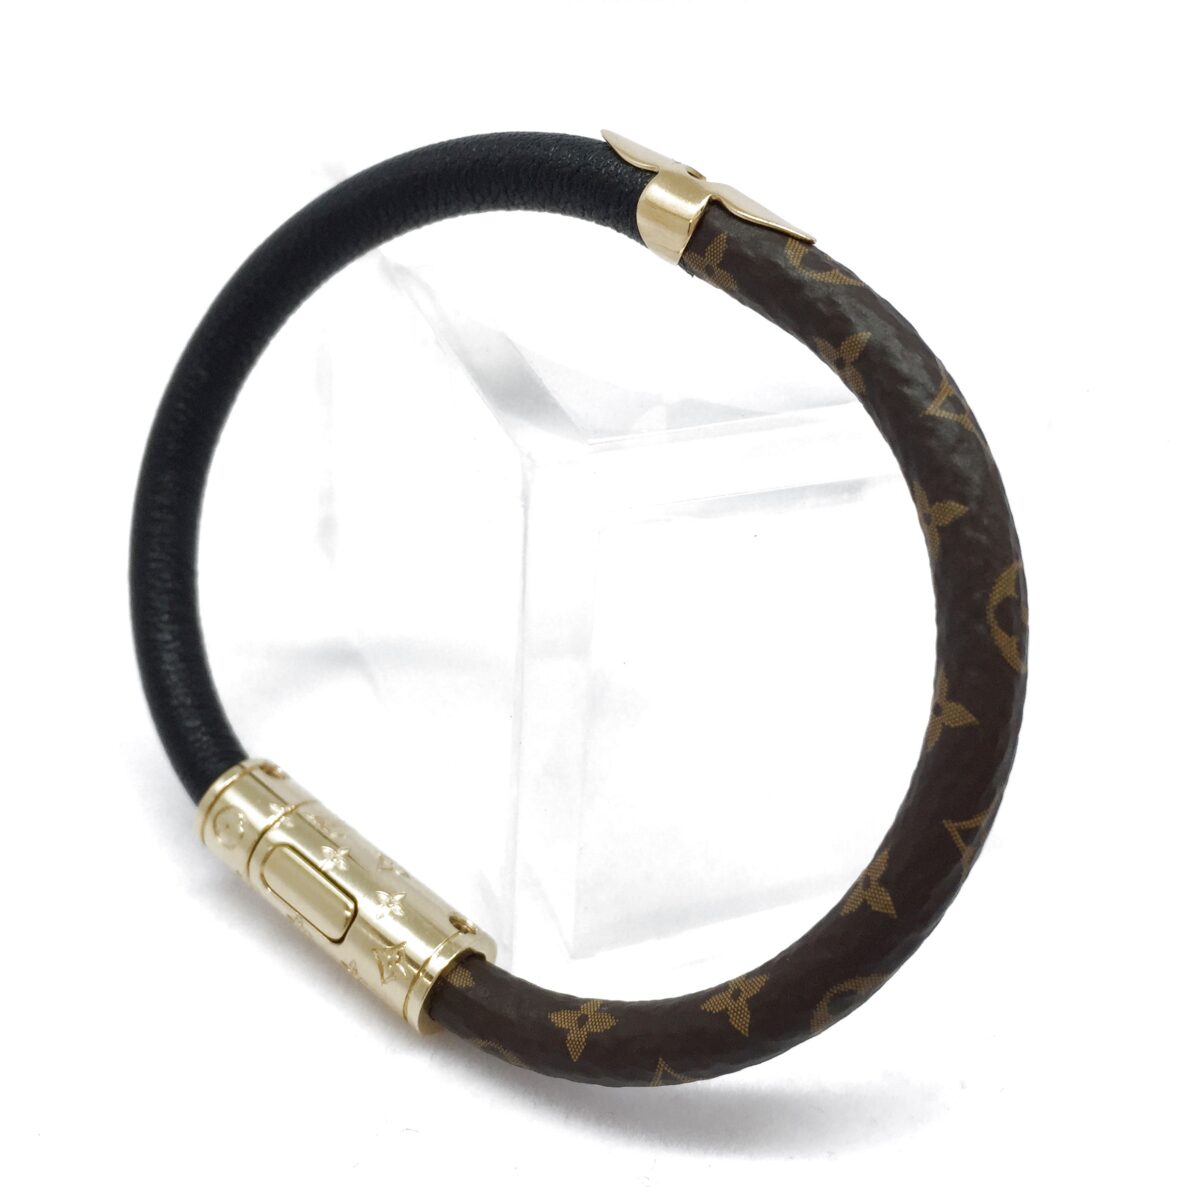 NEW LV Louis Vuitton Bracelet Daily Confidential Monogram Black M6431E 19